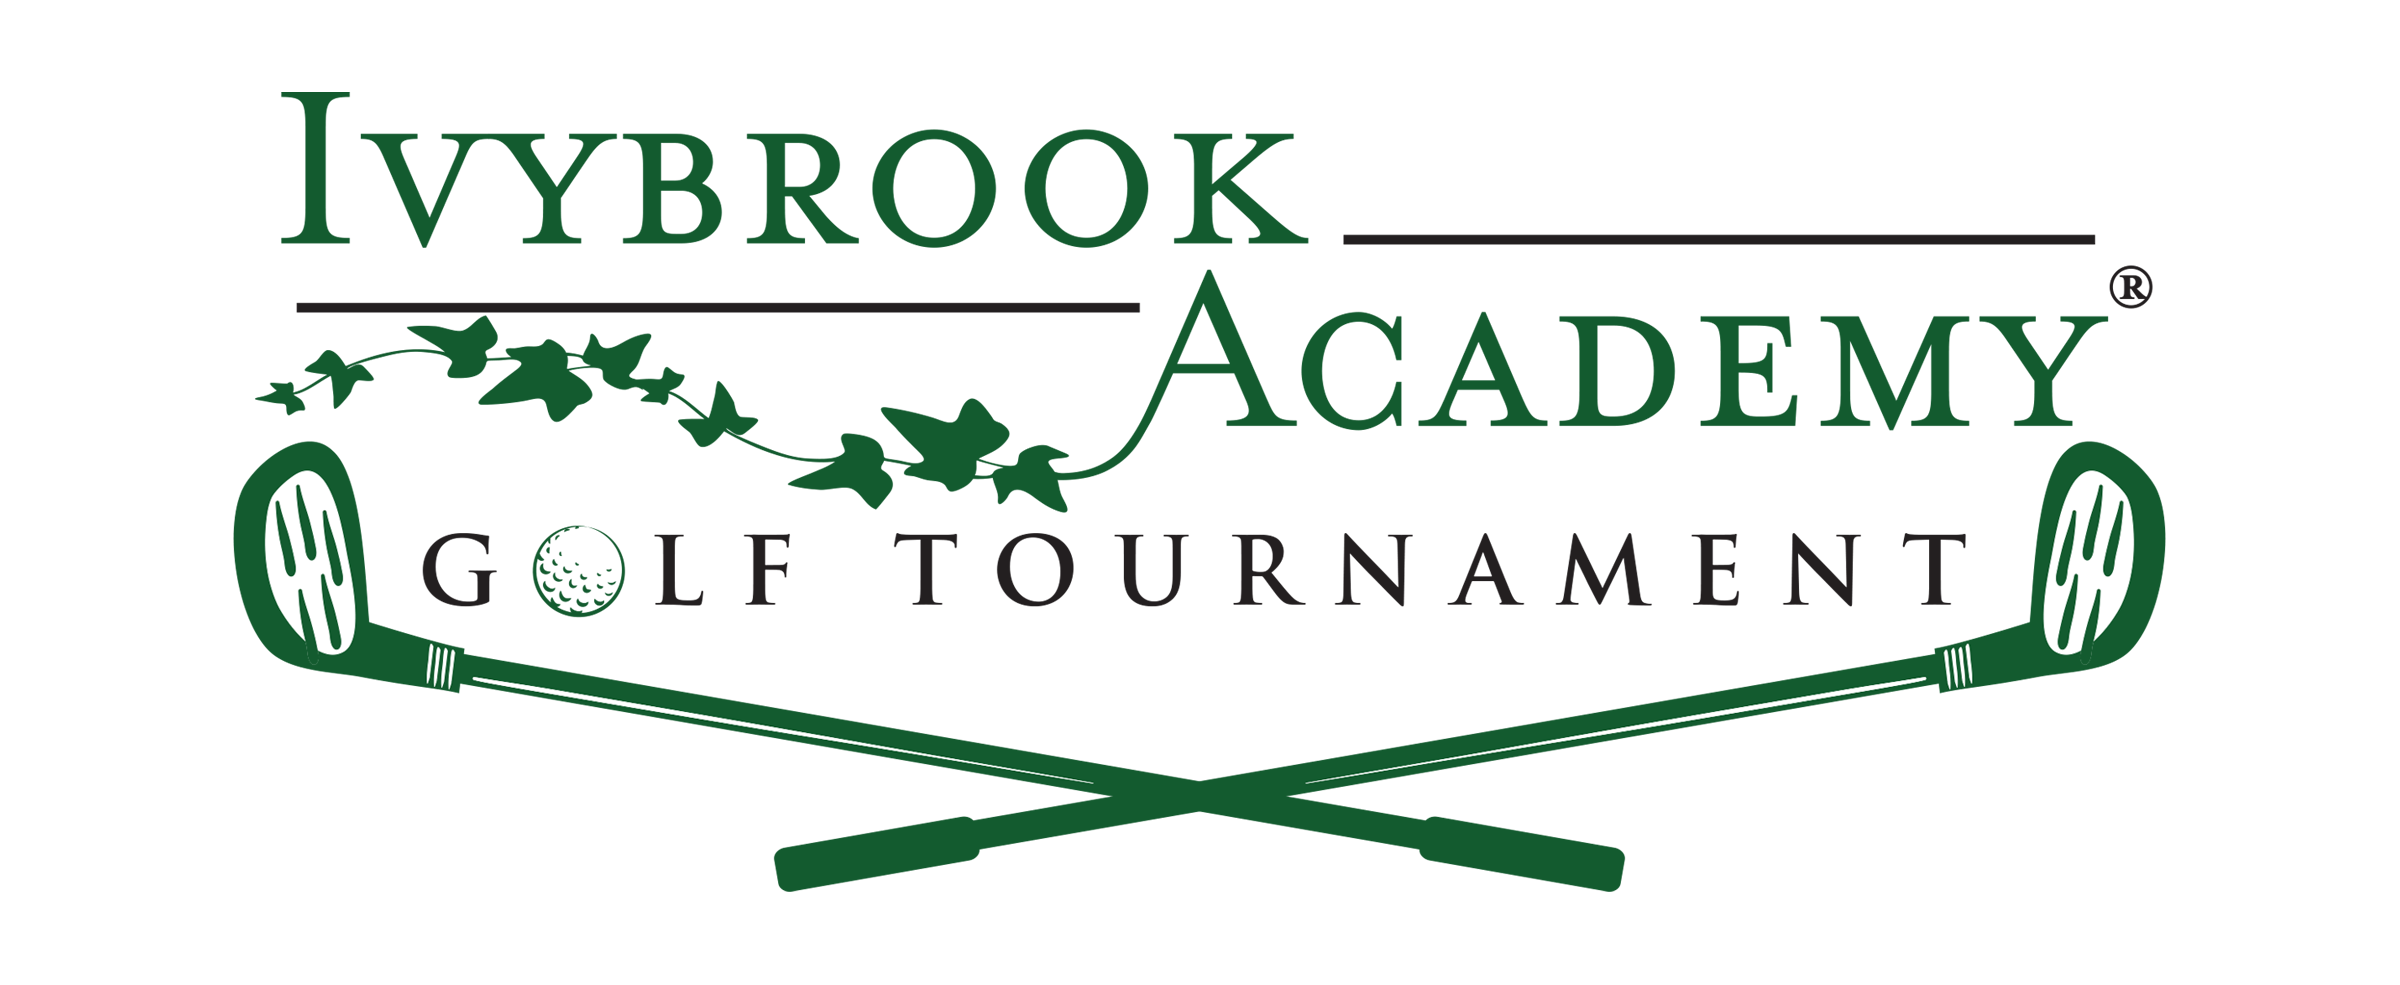 Ivybrook Academy - PTA Fundraiser